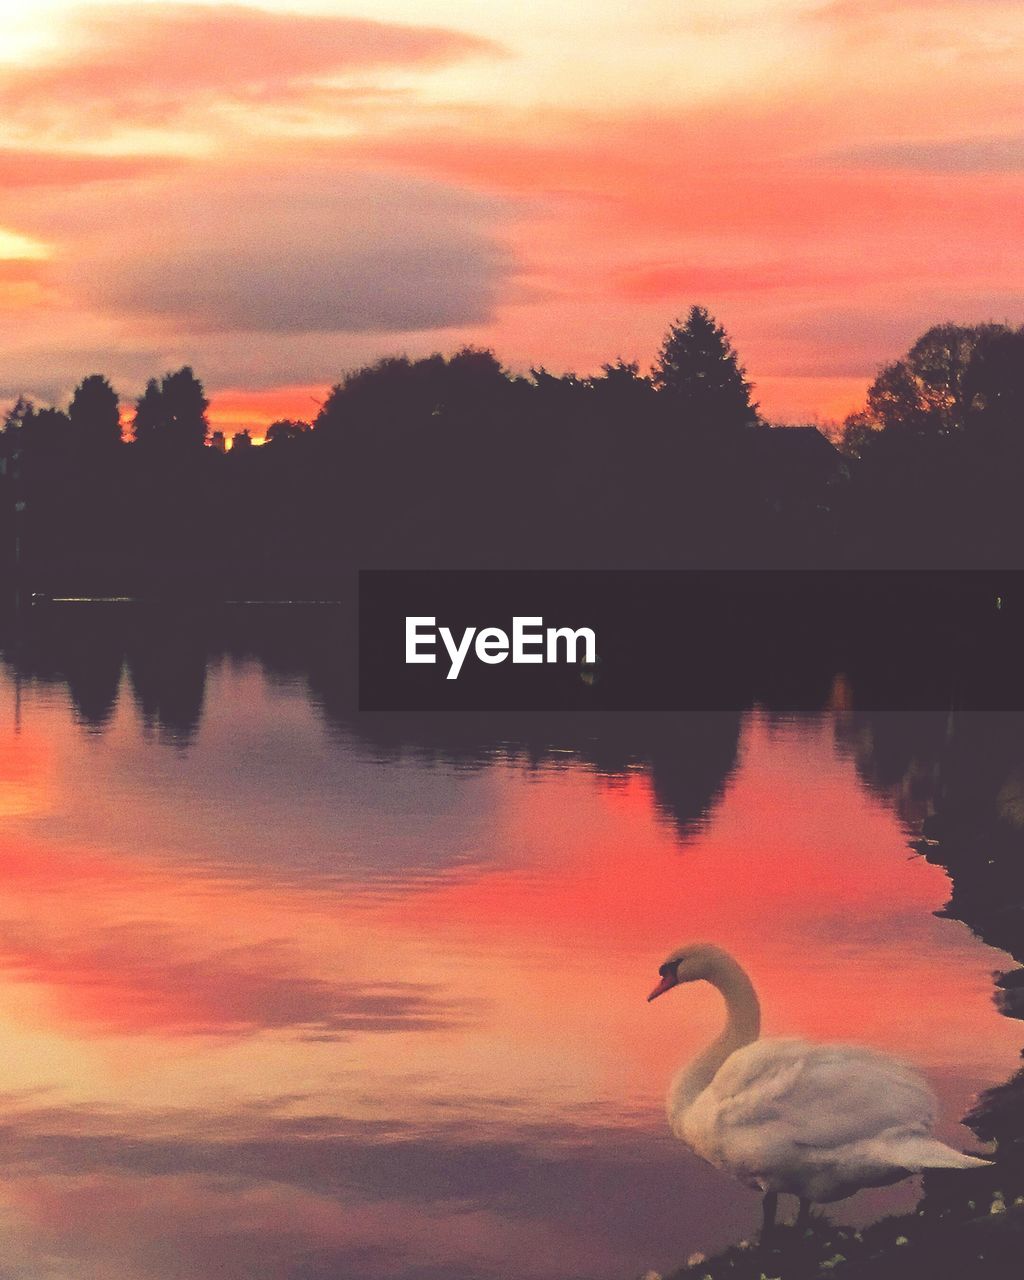 Swan perching at lakeshore against orange sky